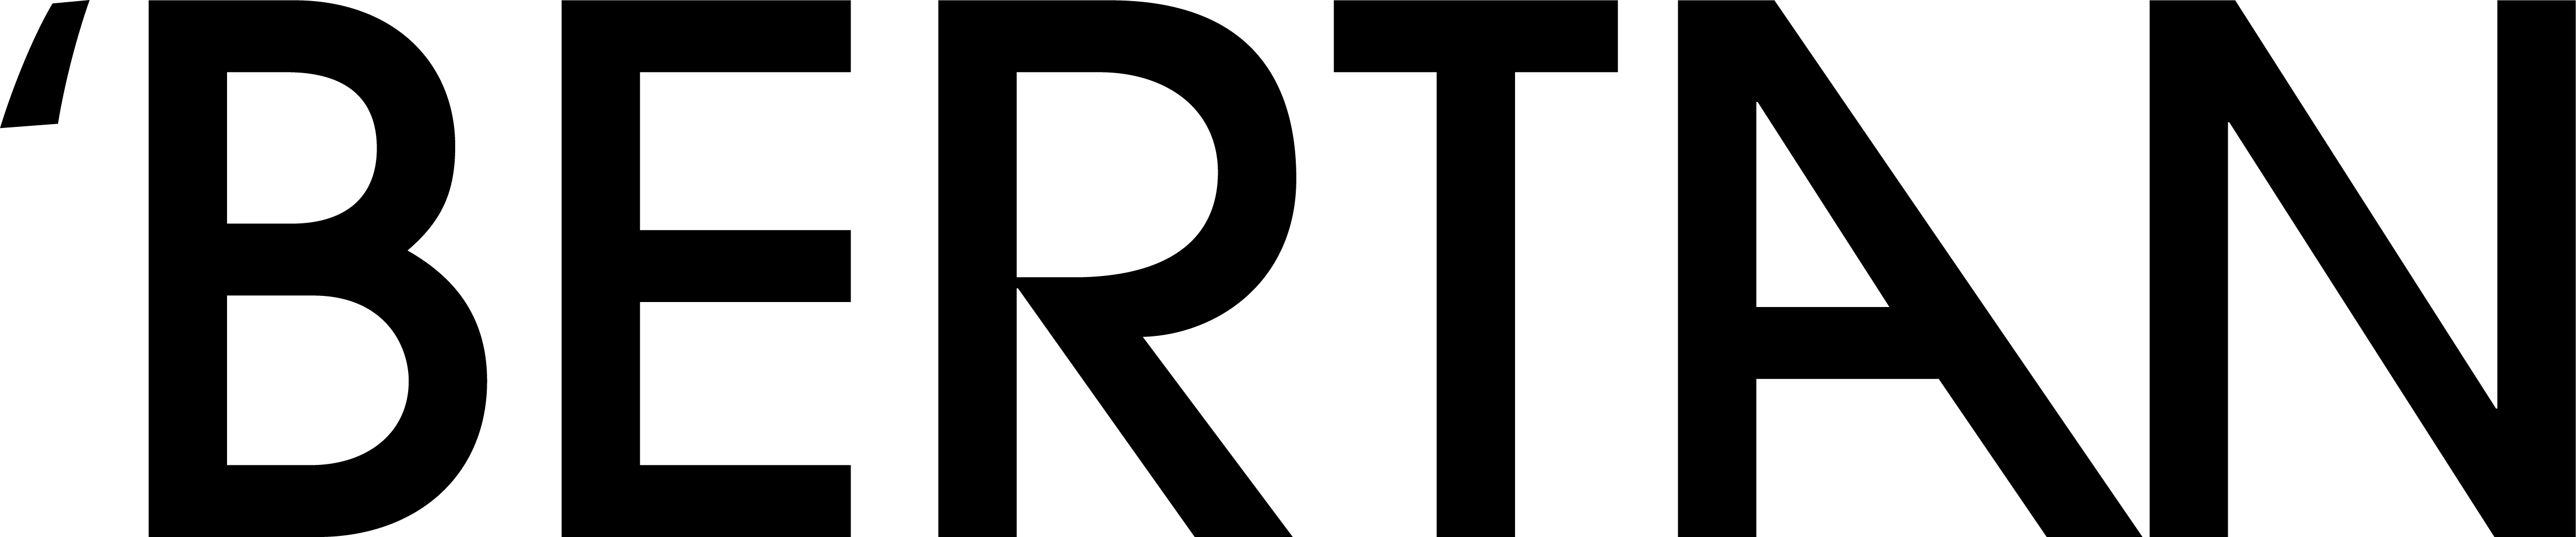 Bertan Ultra Logo